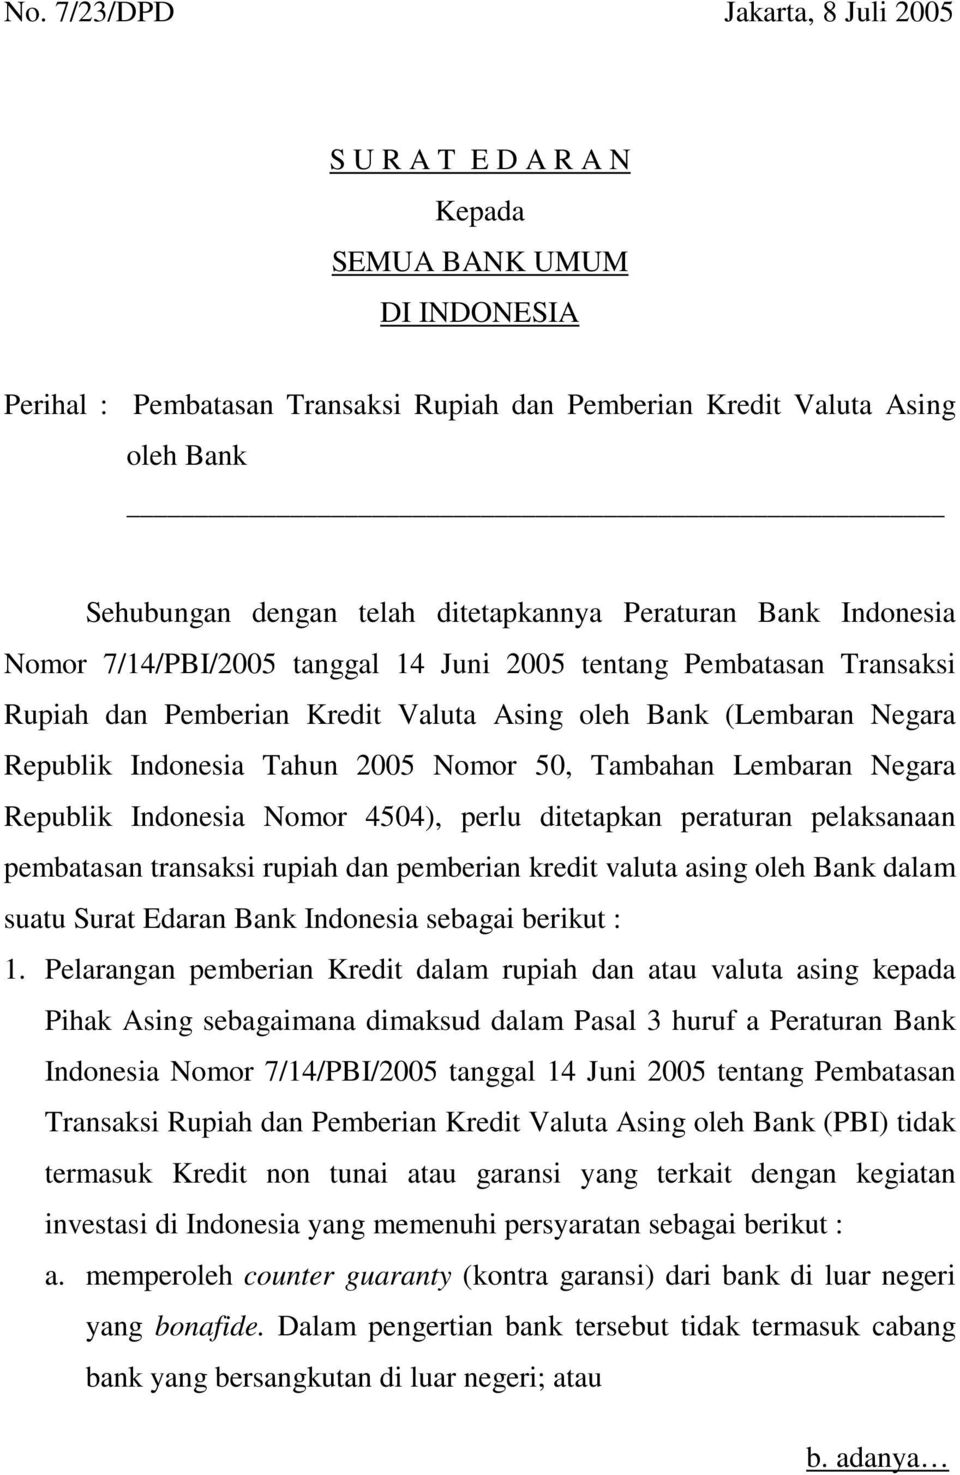 Tahun 2005 Nomor 50, Tambahan Lembaran Negara Republik Indonesia Nomor 4504), perlu ditetapkan peraturan pelaksanaan pembatasan transaksi rupiah dan pemberian kredit valuta asing oleh Bank dalam